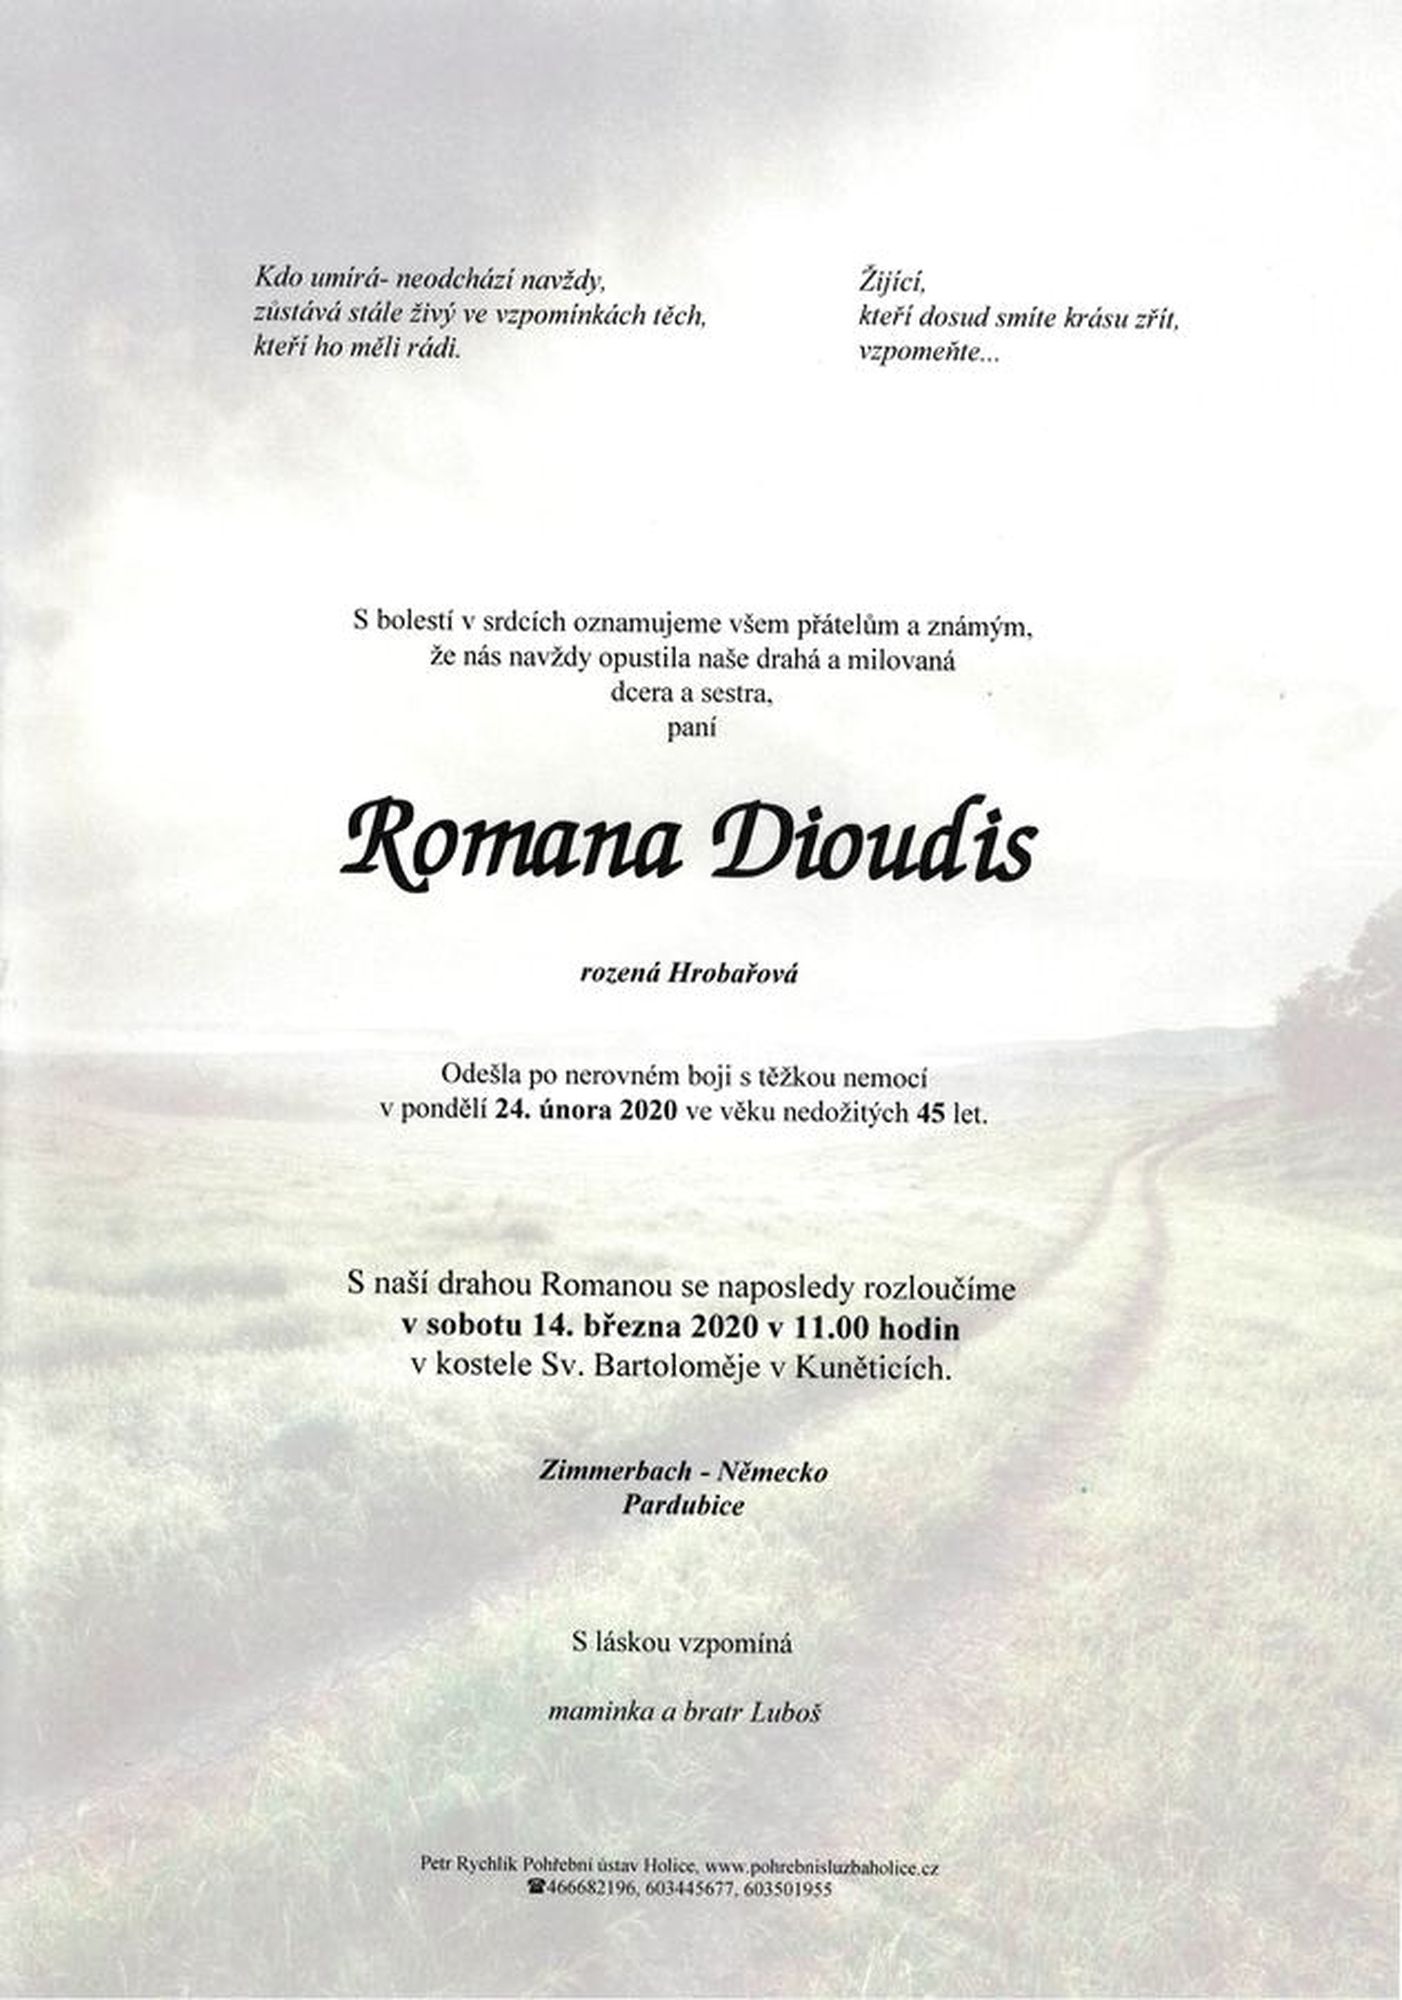 Romana Dioudis